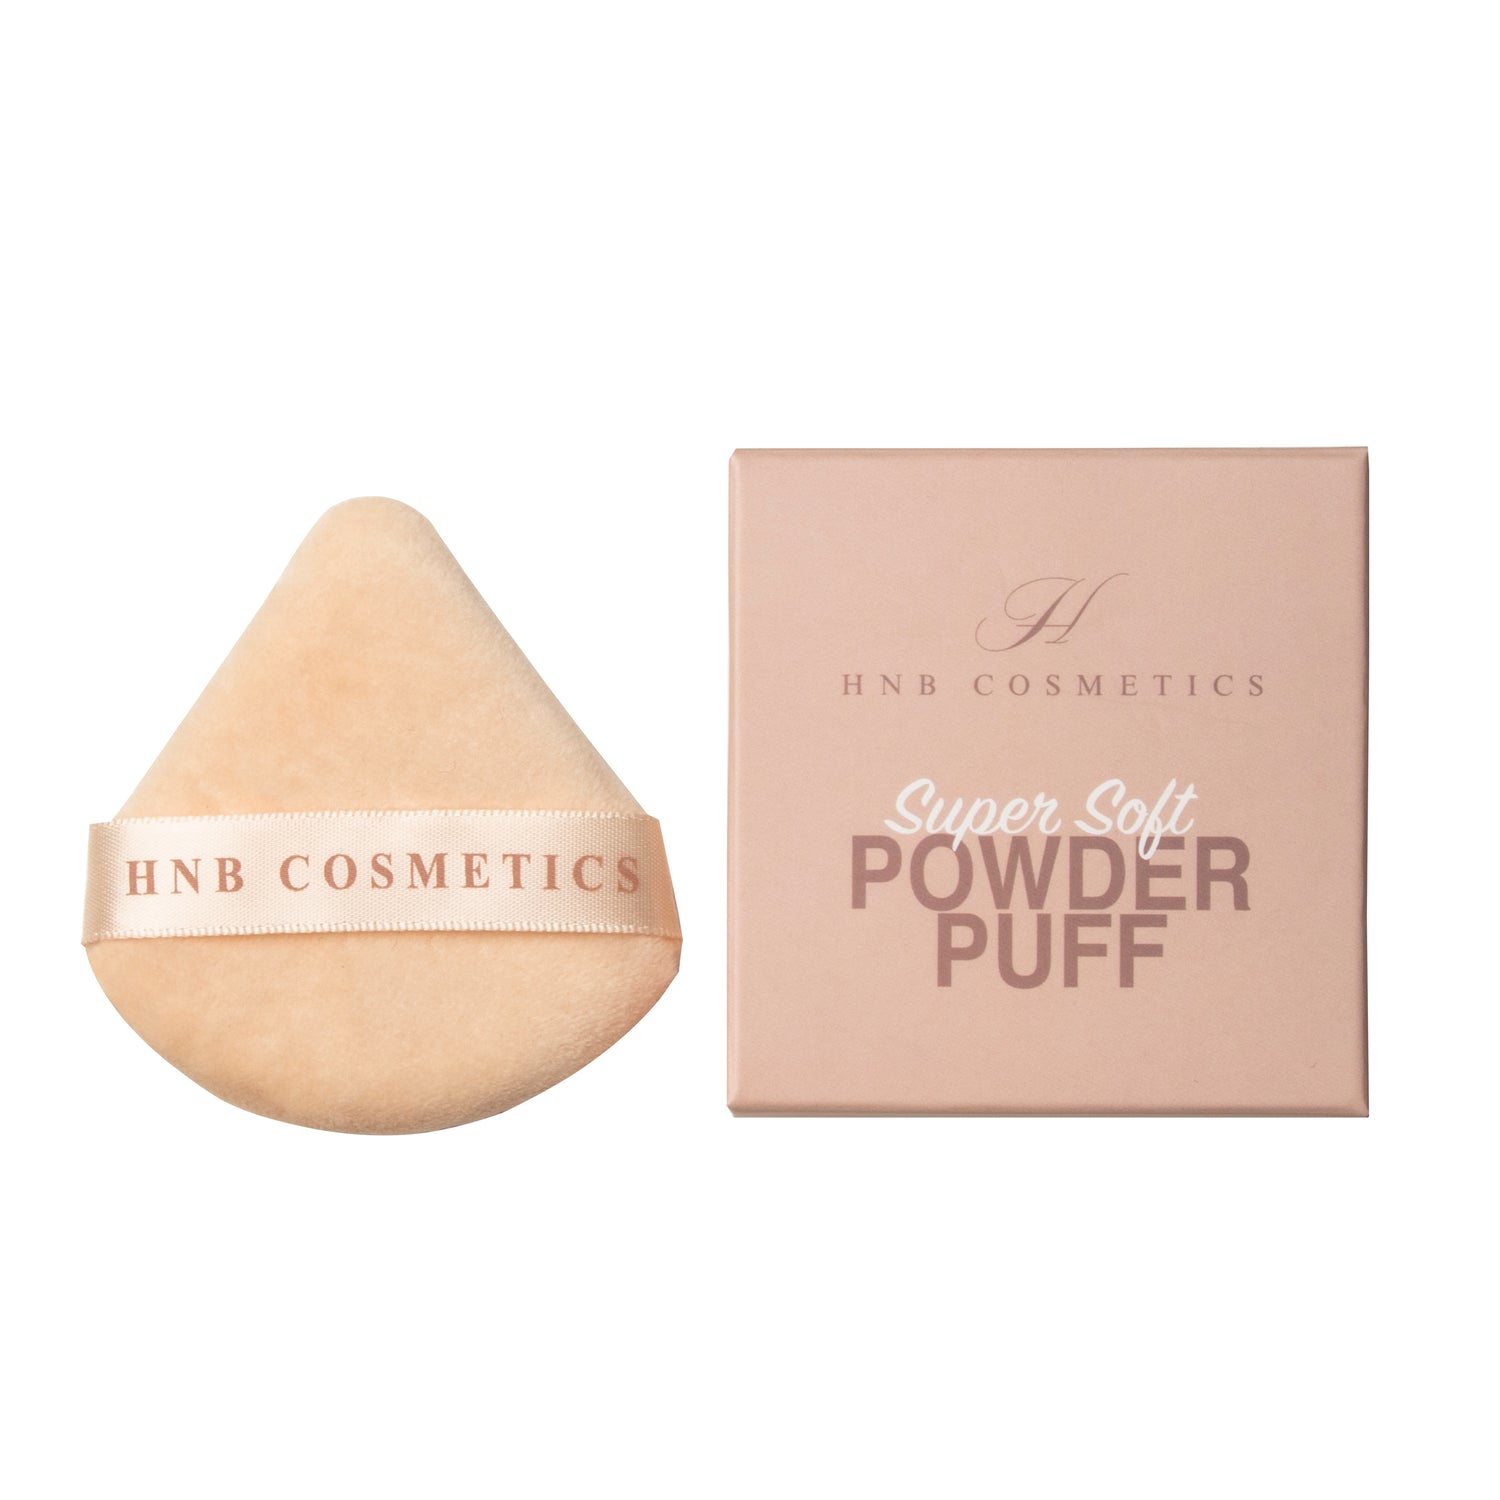 HNB Cosmetics powder puff.